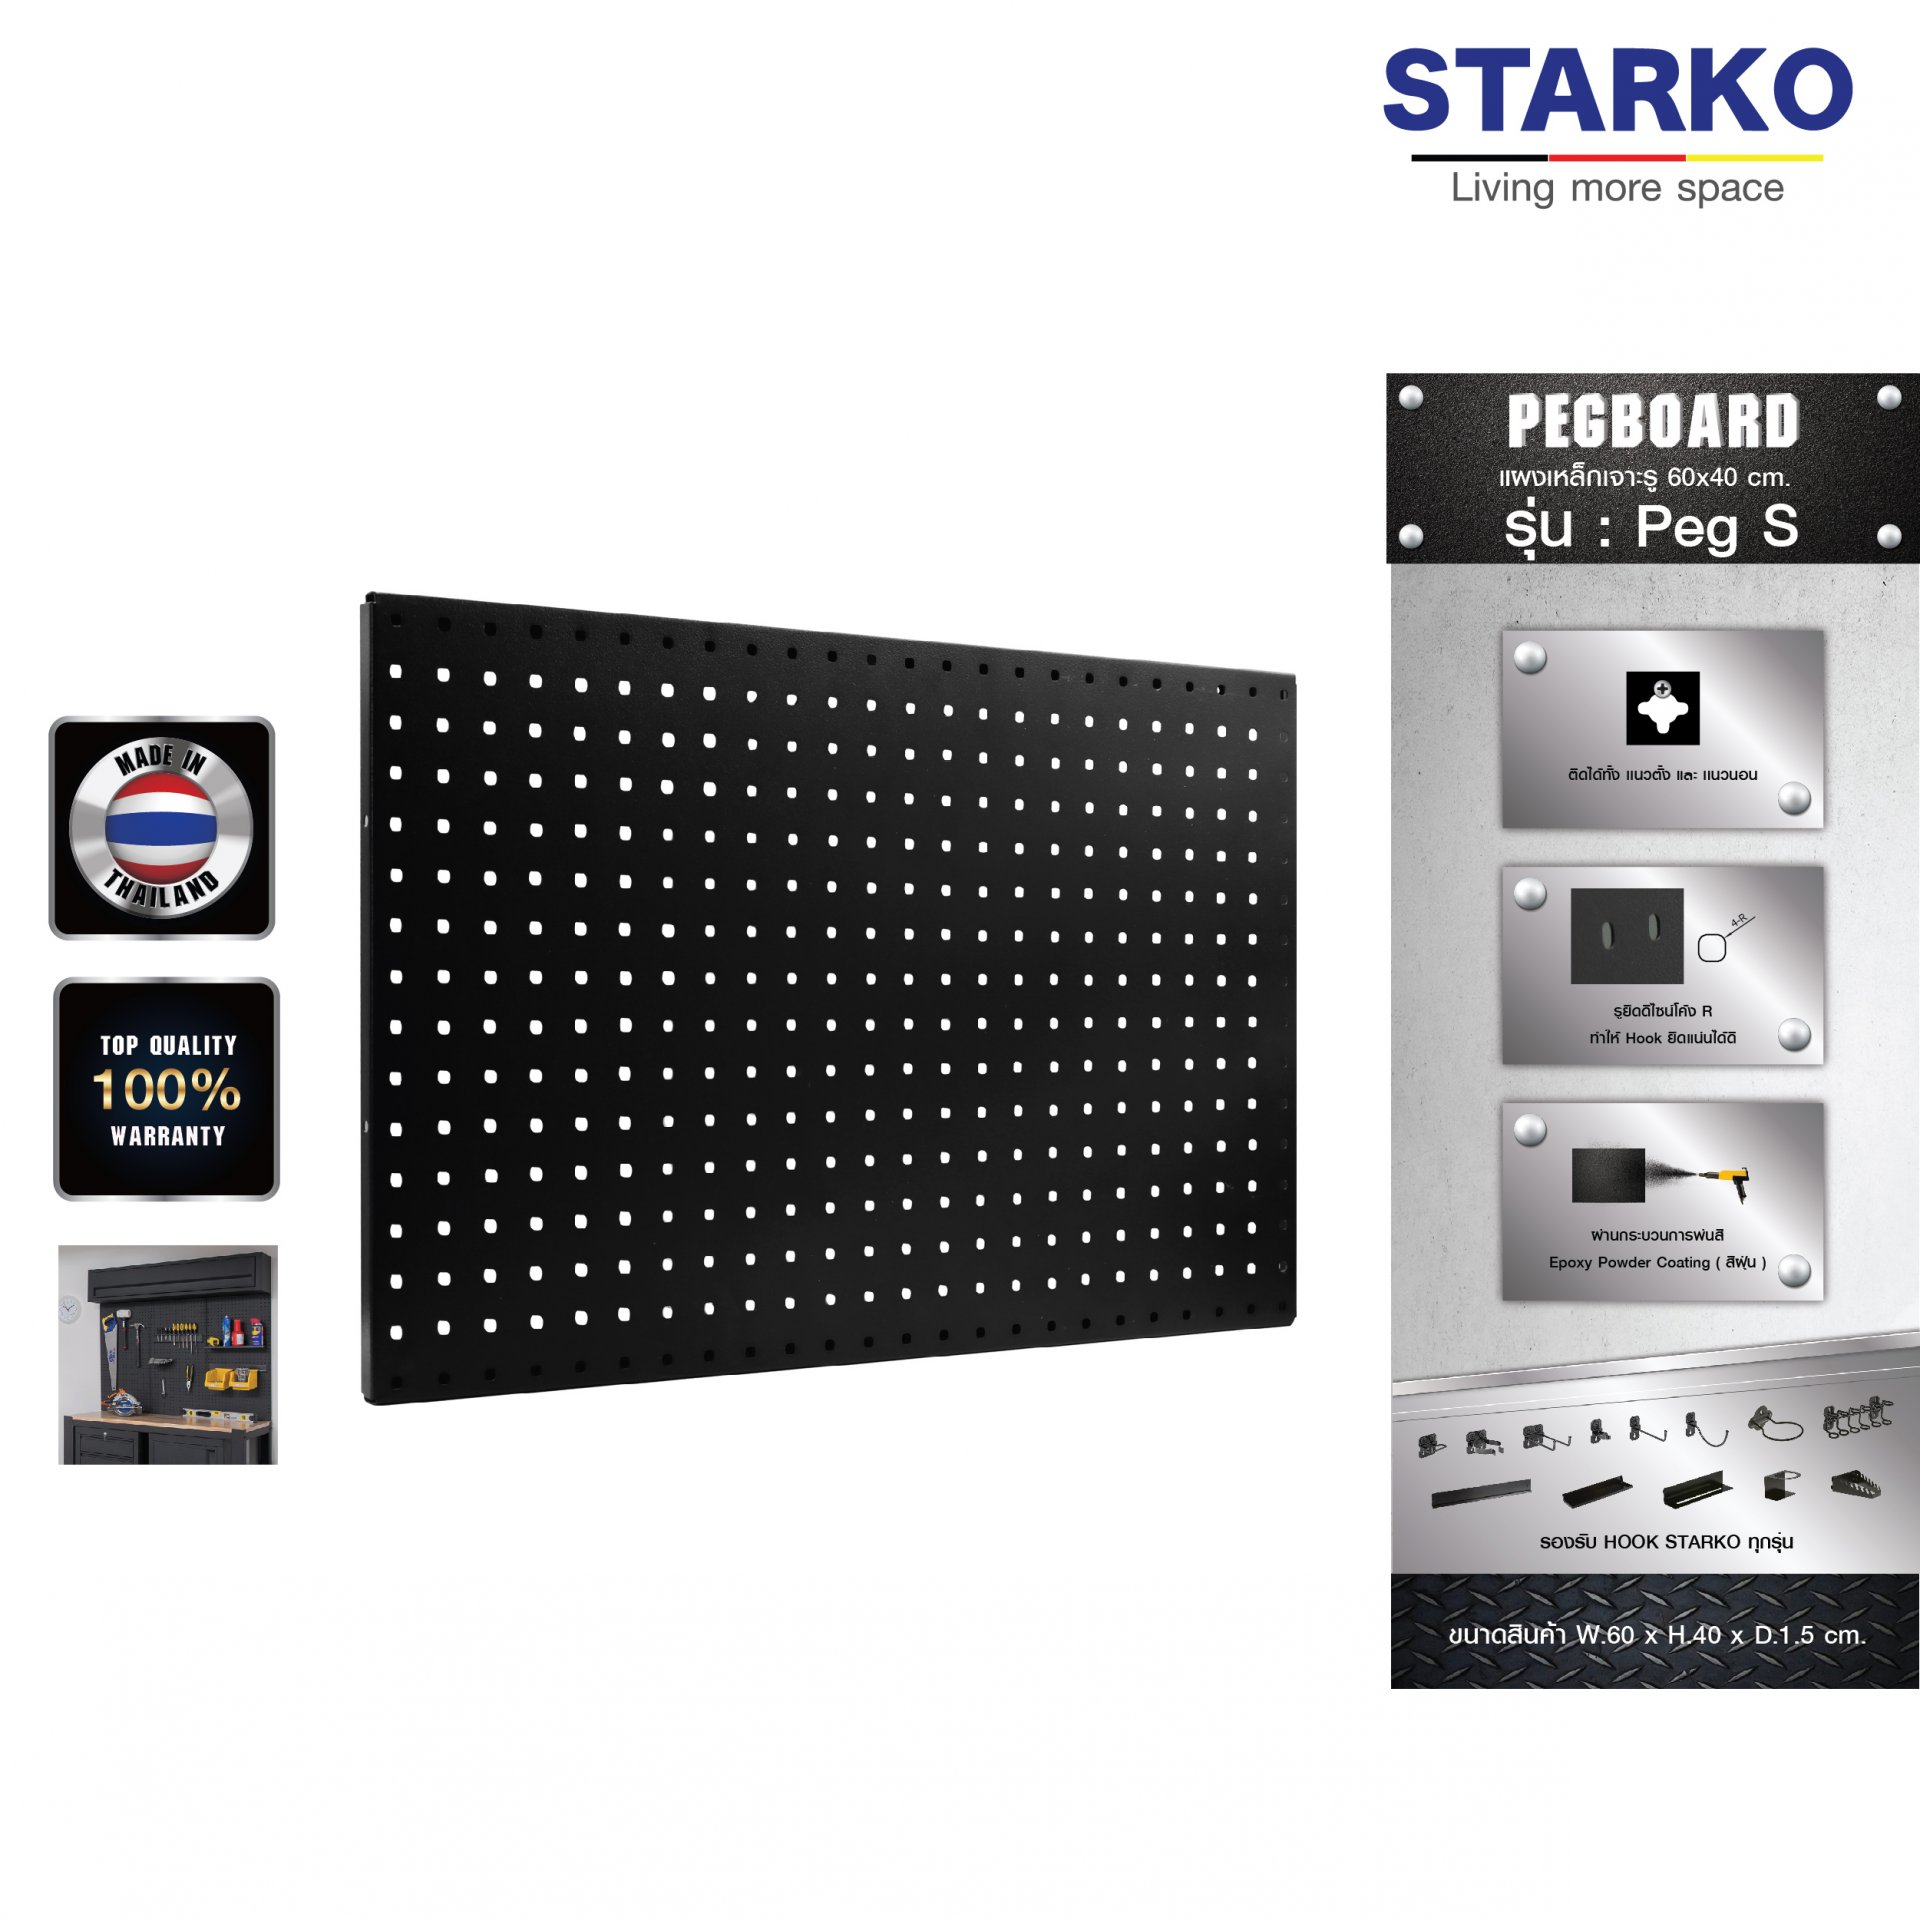 STARKO PEGBOARD รุ่น Peg S (Black) แผงเหล็ก แผงแขวน เครื่องมือช่าง จัดเรียงอุปกรณ์ช่าง จัดระเบียบอุปกรณ์ แข็งแรง สินค้าประเทศไทย